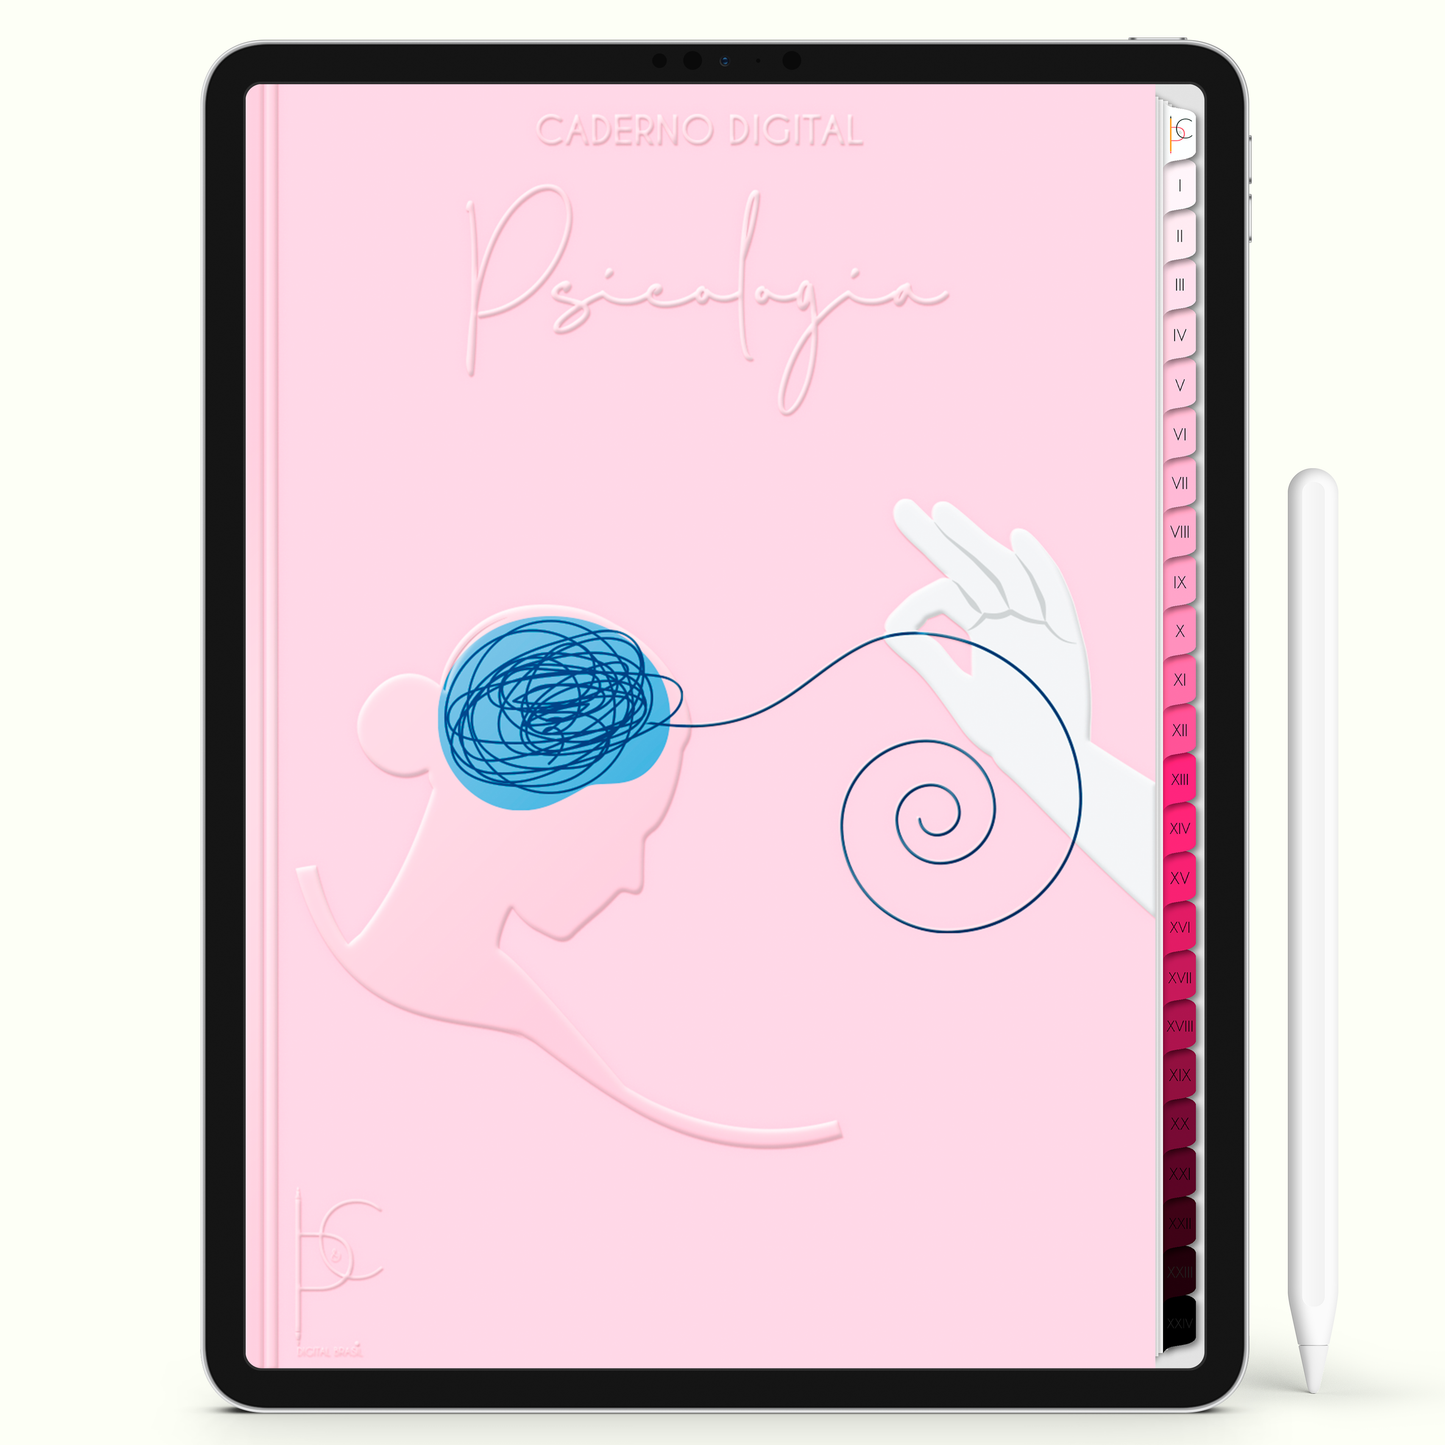 Caderno Digital Blush Psicologia Jornada da Mente 24 Matérias • iPad e Tablet Android • Download instantâneo • Sustentável